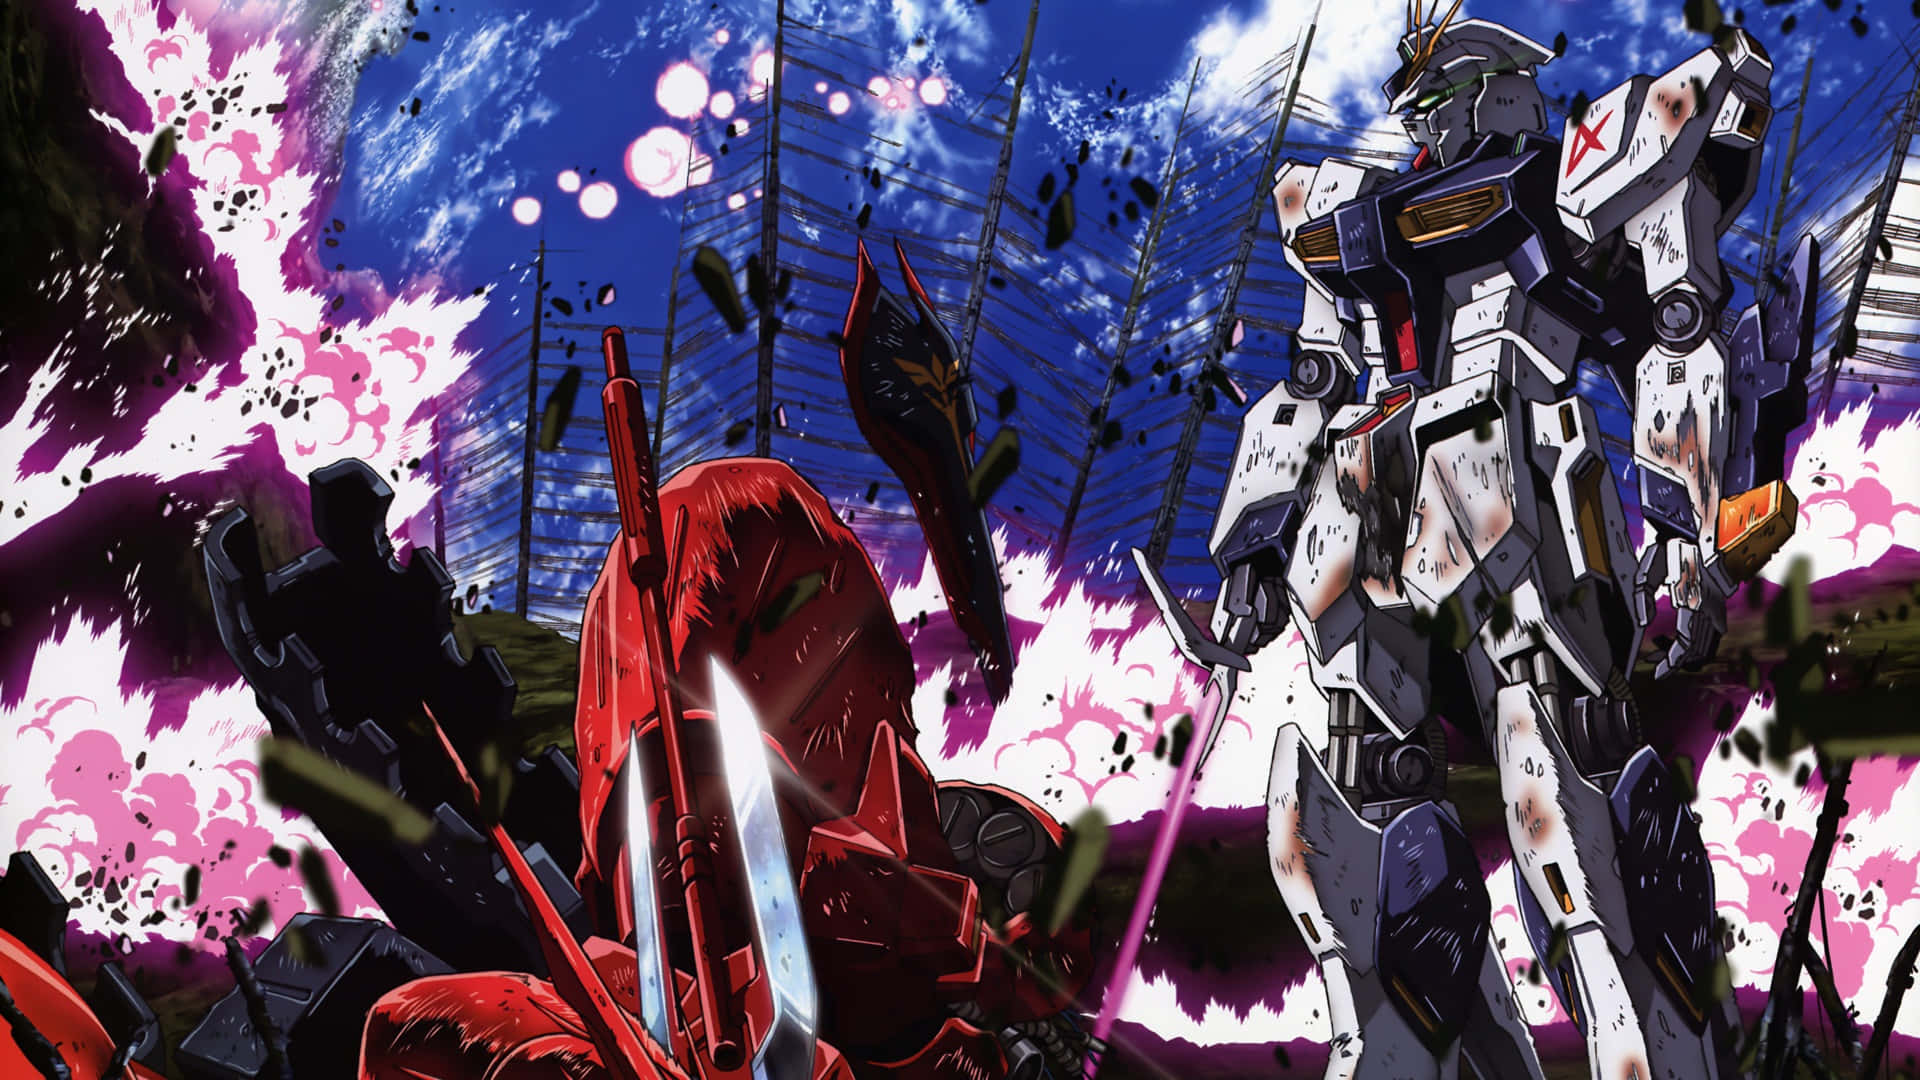 Imidten Af Selvopdagelsen, Låste Gundam Op For Kraften Til At Bekæmpe Det Onde.